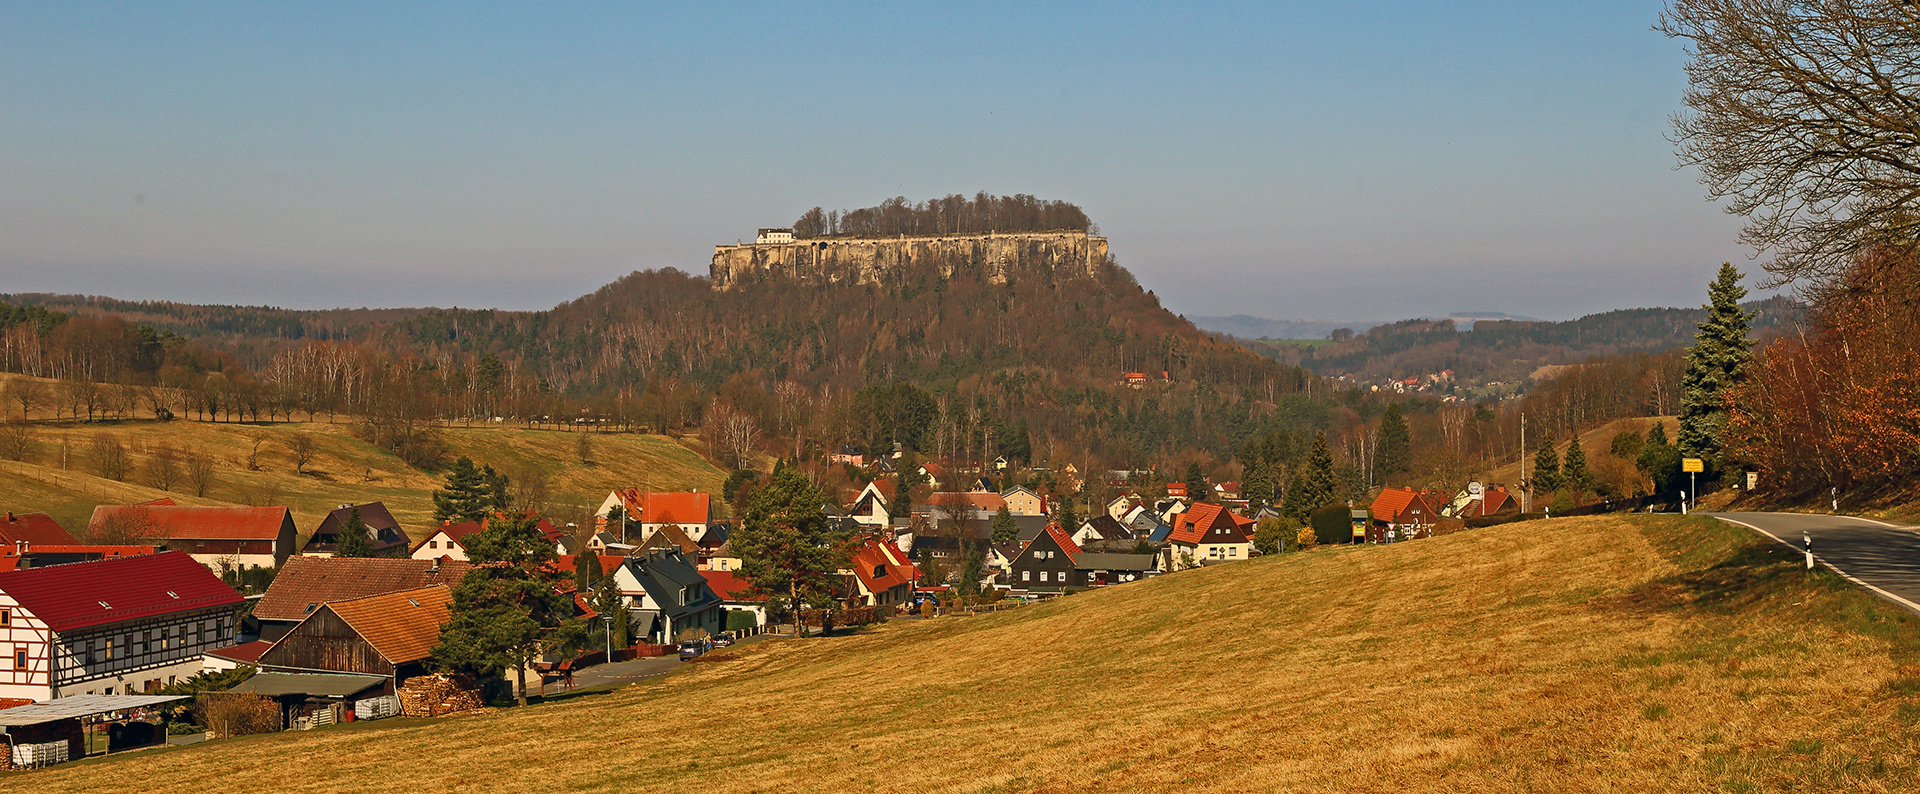 Für mich einer der schönsten Blicke in der Sächsischen Schweiz...